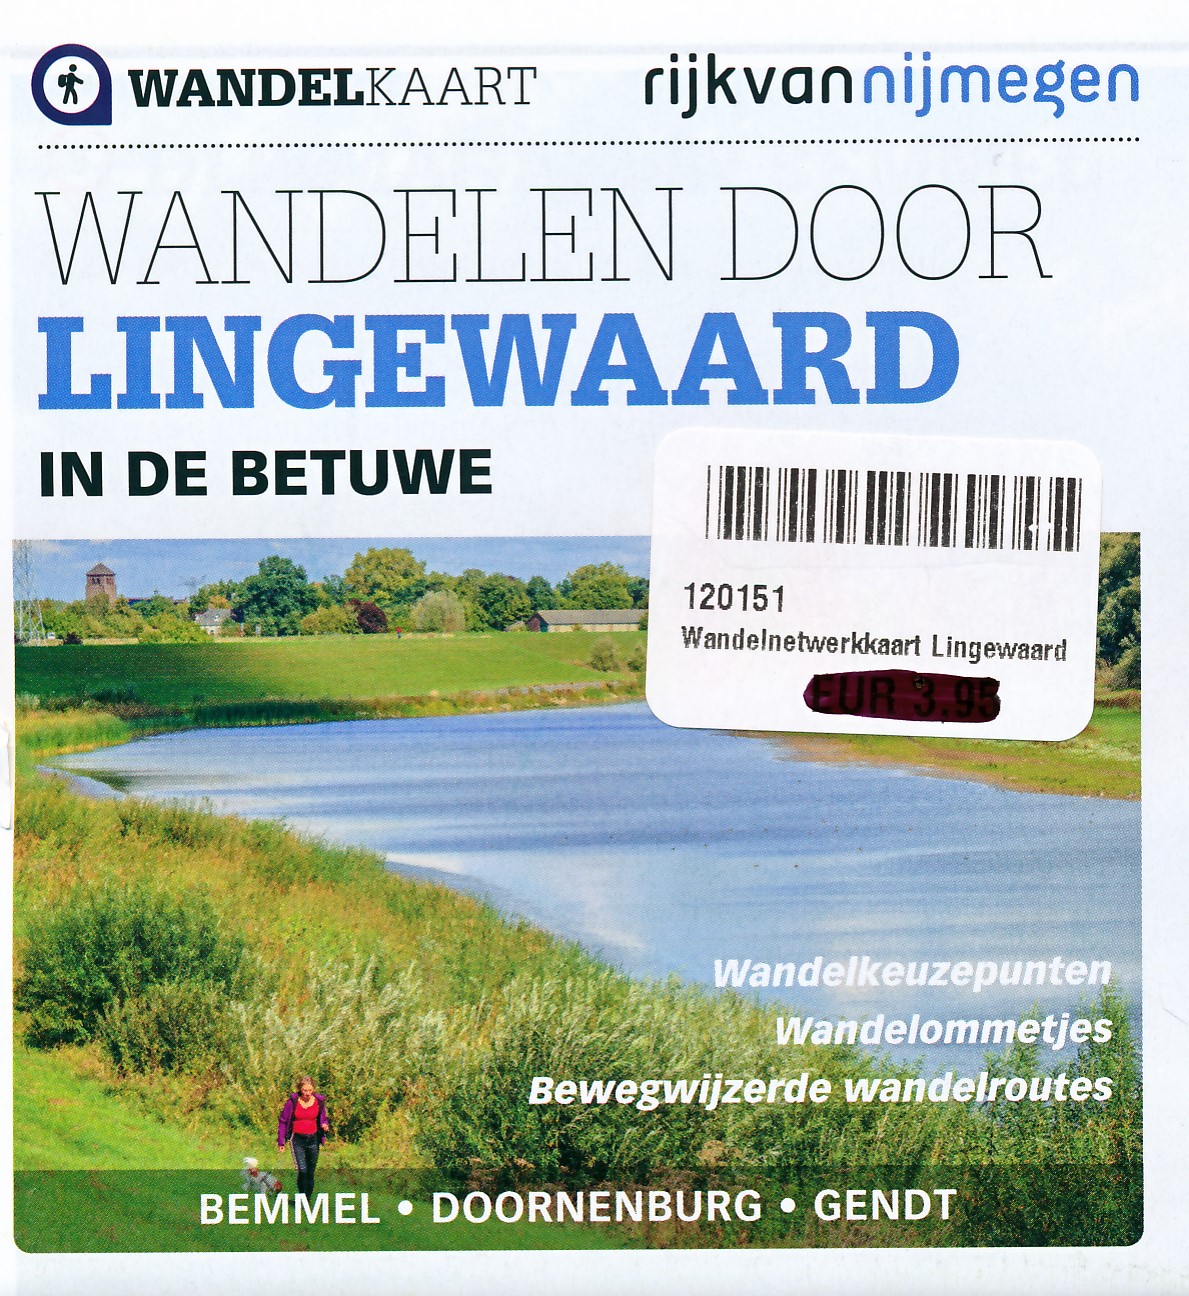 Online bestellen: Wandelknooppuntenkaart - Wandelkaart Wandelen door Lingewaard in de Betuwe | regioarnhem